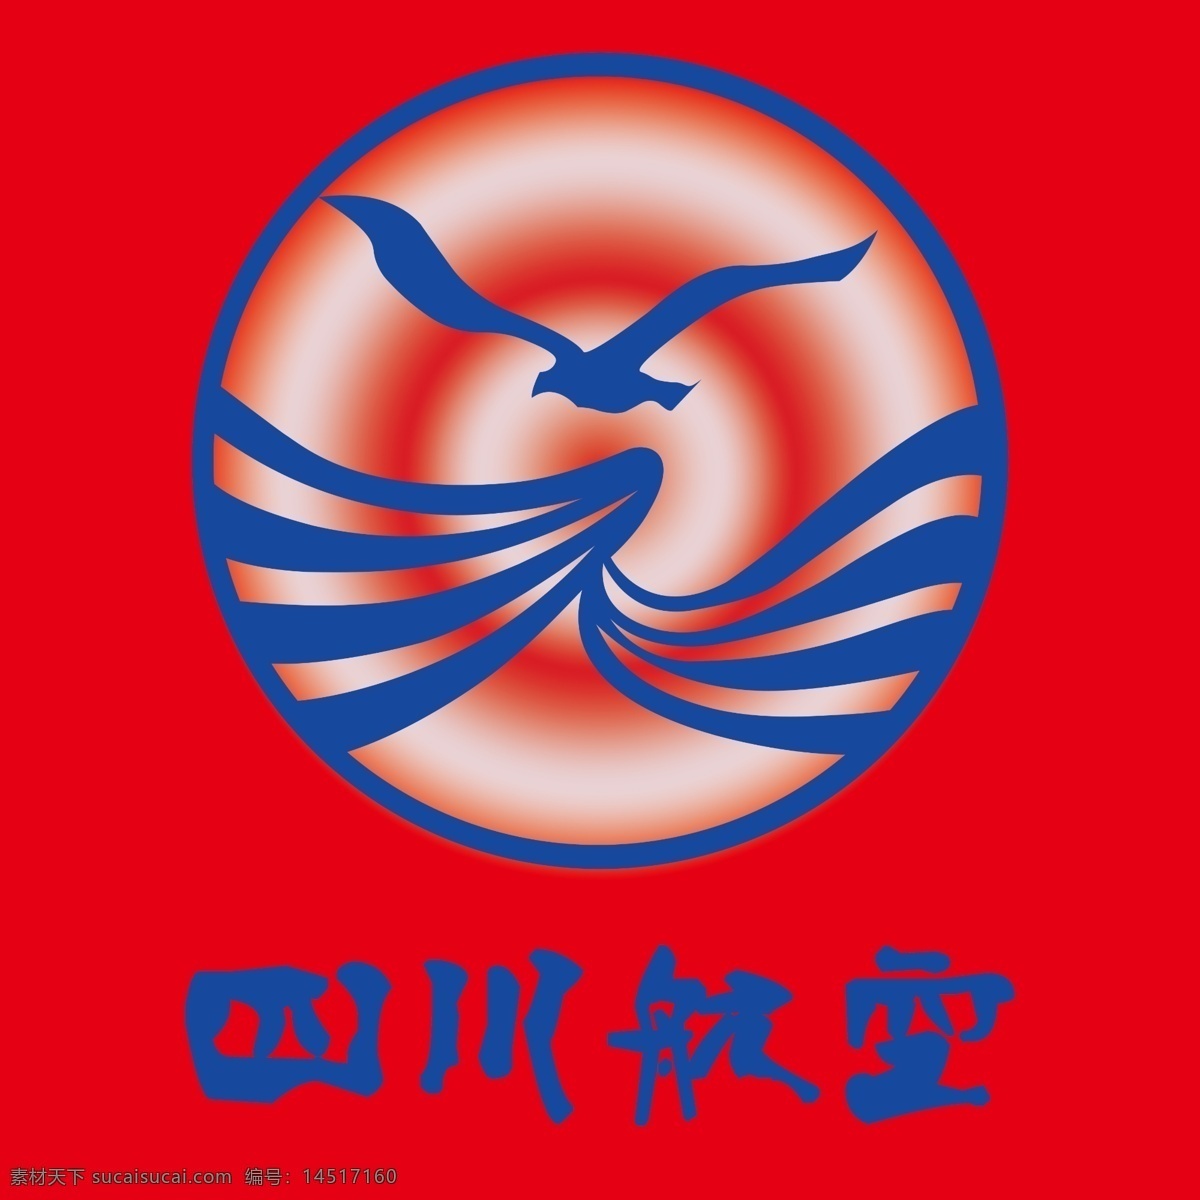 四川 航空 logo 航空logo 四川航空标志 企业标志 企业logo 标志设计 广告设计模板 源文件